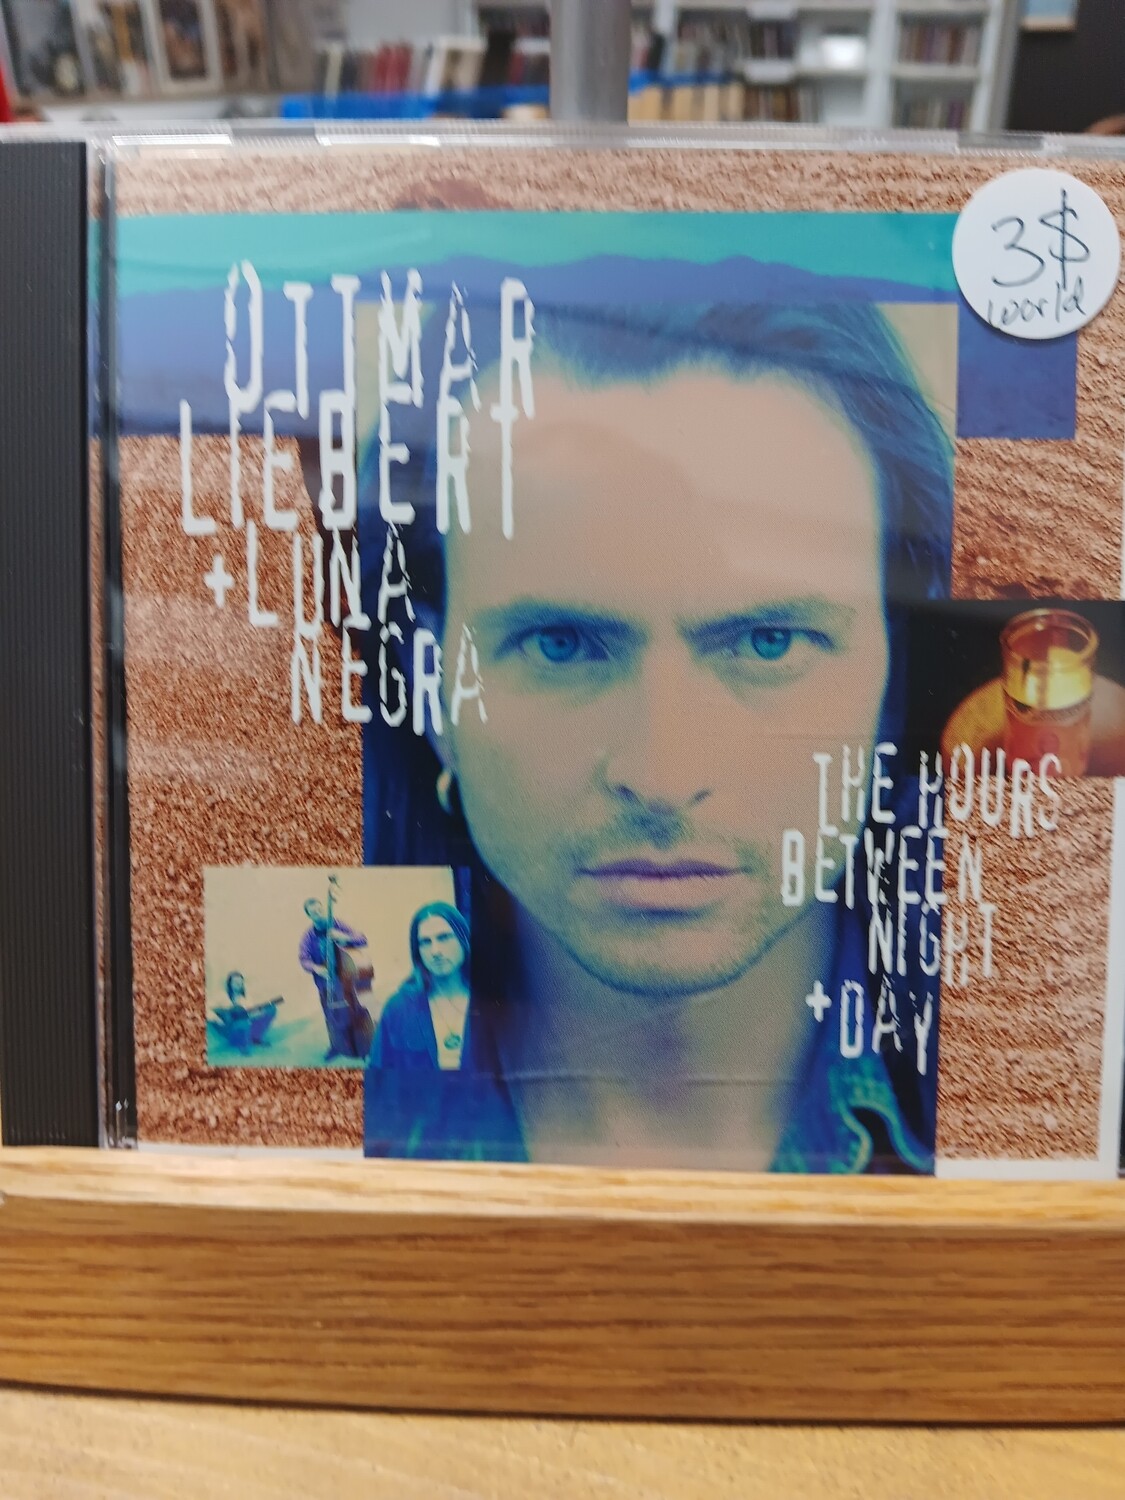 OTTMAR LIEBERT &amp; LUNA NEGRA - The hours between night + day (CD)